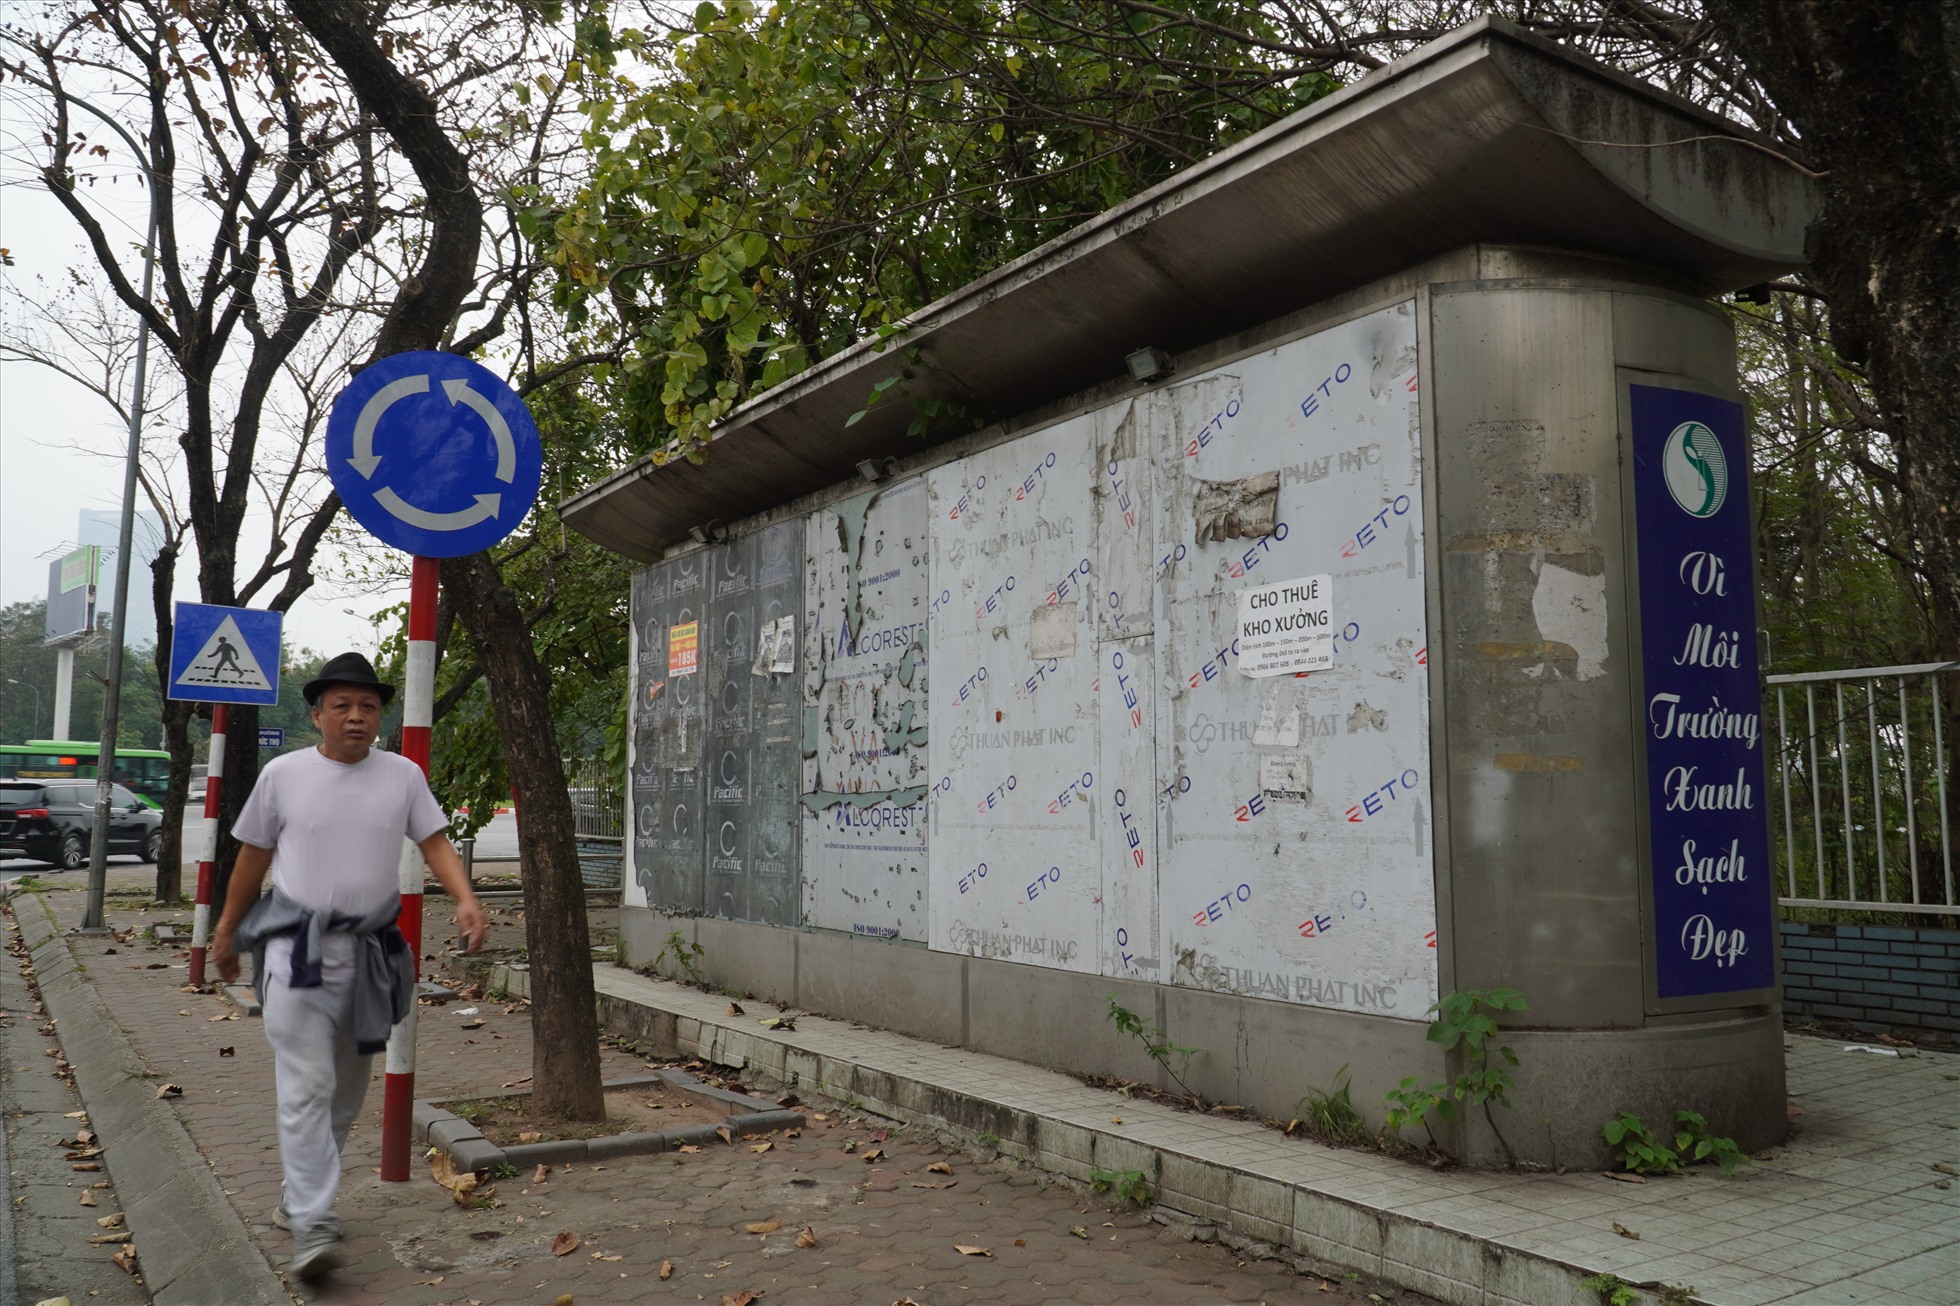 Ông Trần Văn Toàn (quận Nam Từ Liêm) cho biết: “Hệ thống nước hư hỏng, nhiều nhà vệ sinh công cộng tại đây đã phải đóng cửa. Nhiều người dân hay đi tập thể dục qua đây thường xuyên phóng uế luôn bên ngoài nhà vệ sinh“.